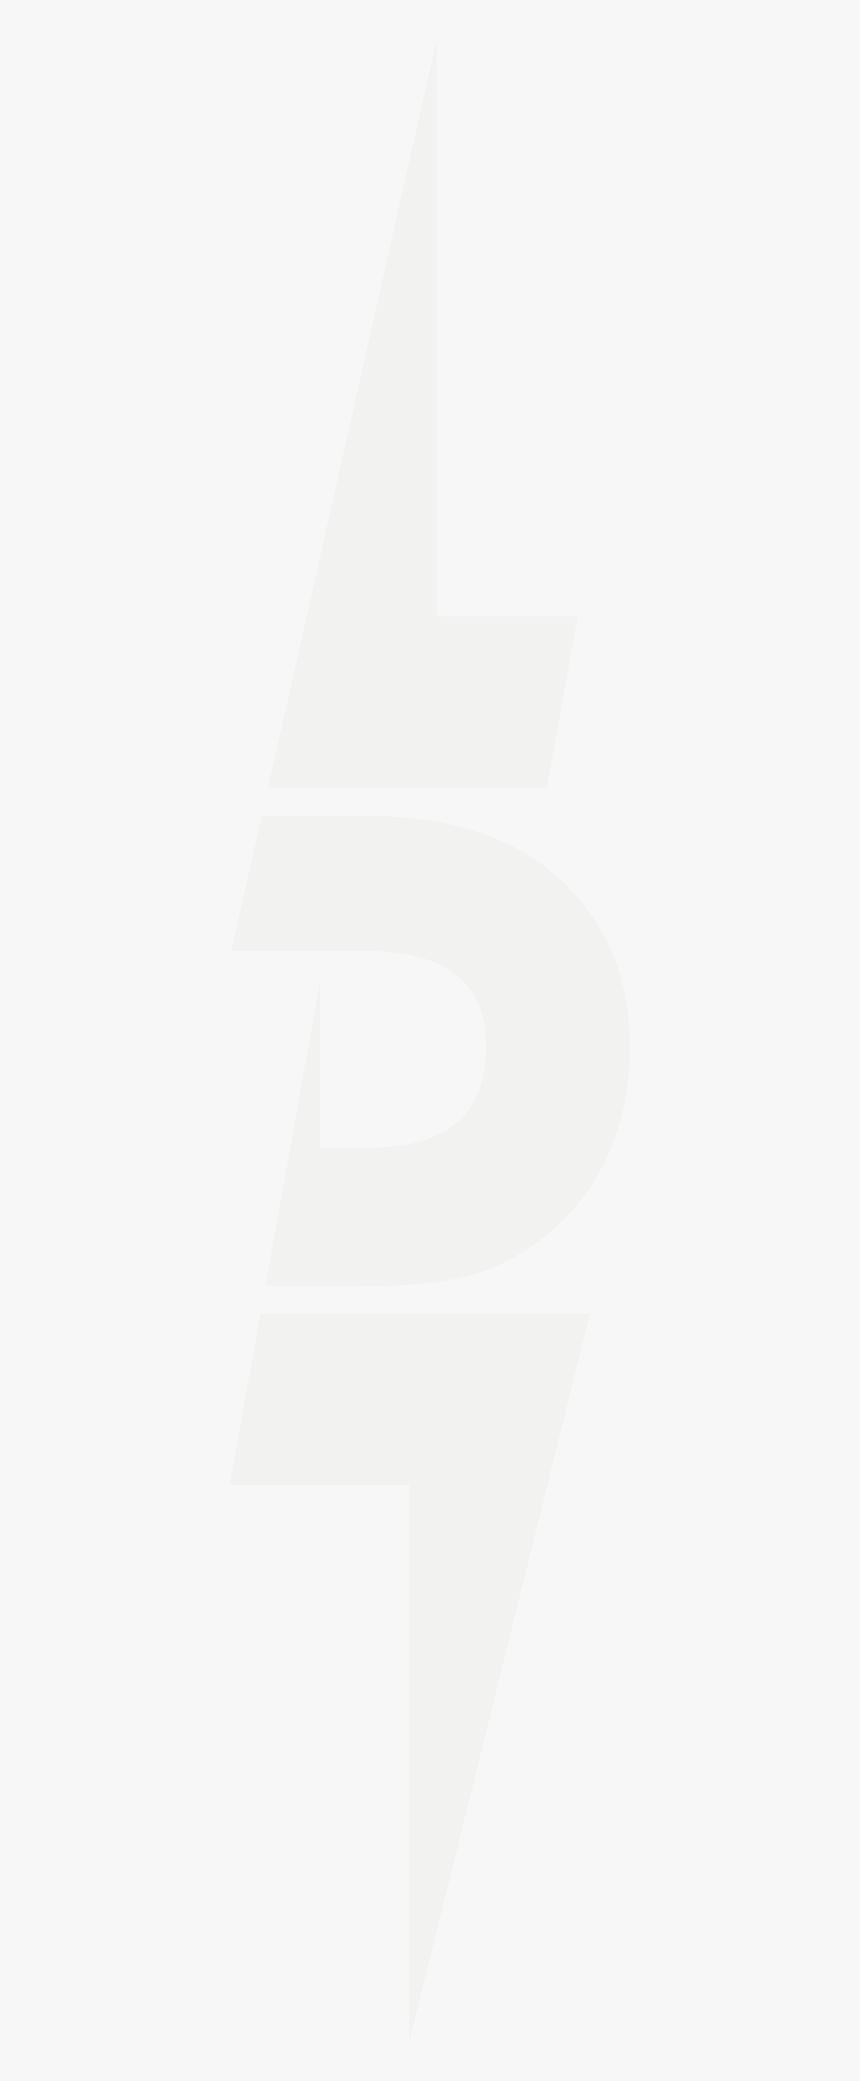 Transparent Luka Png - Luka Doncic Logo, Png Download, Free Download